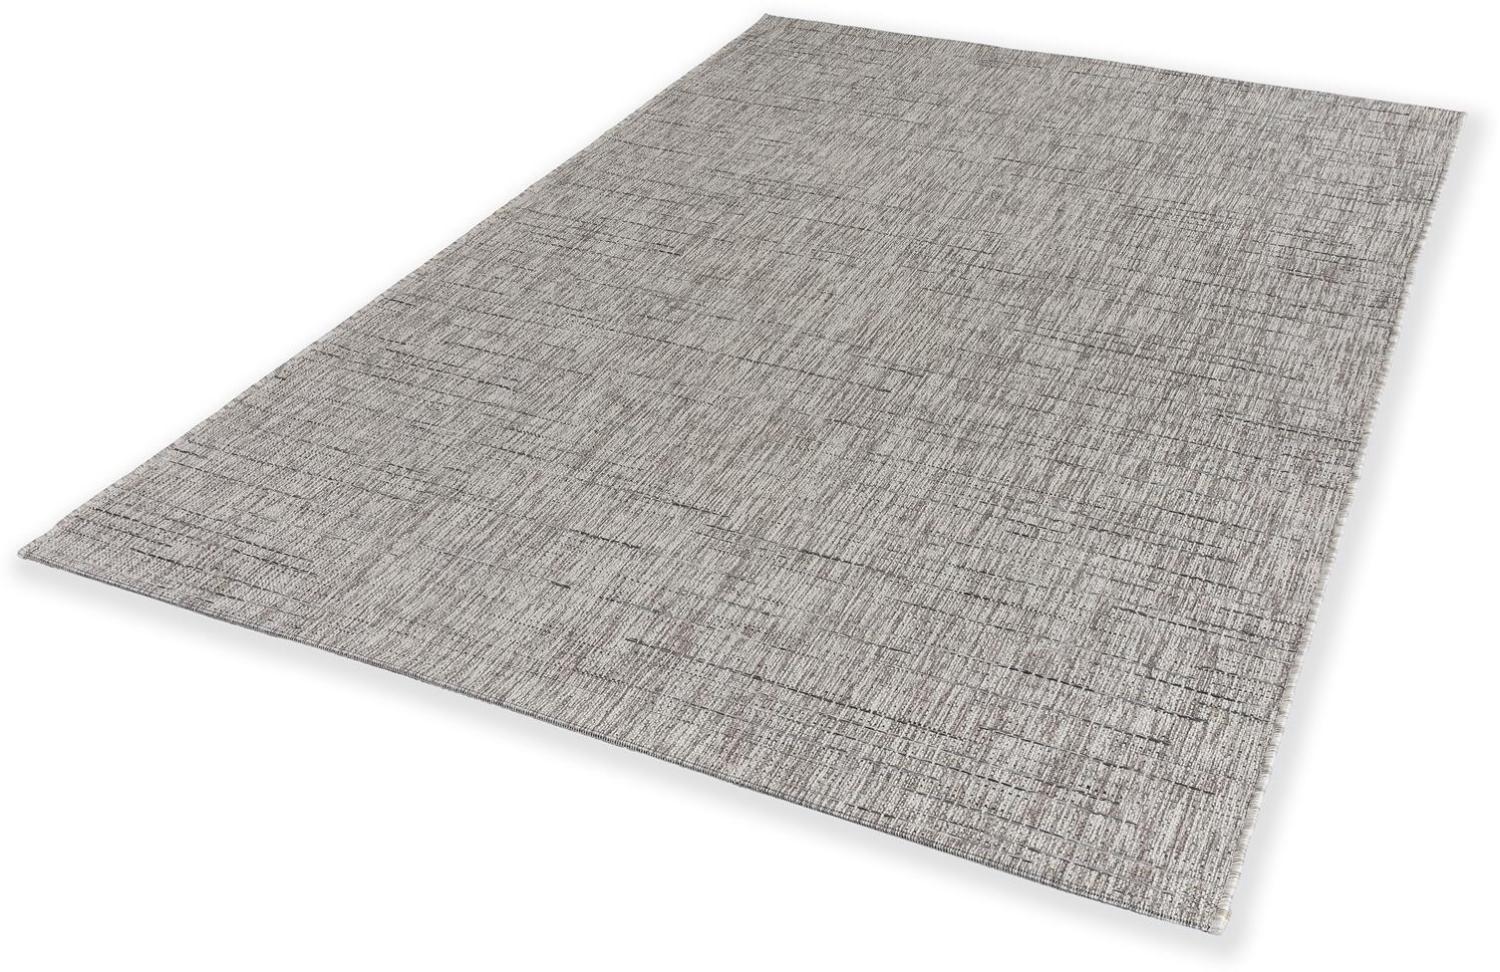 Teppich in Anthrazit aus 100% Polypropylen - 170x120x1cm (LxBxH) Bild 1